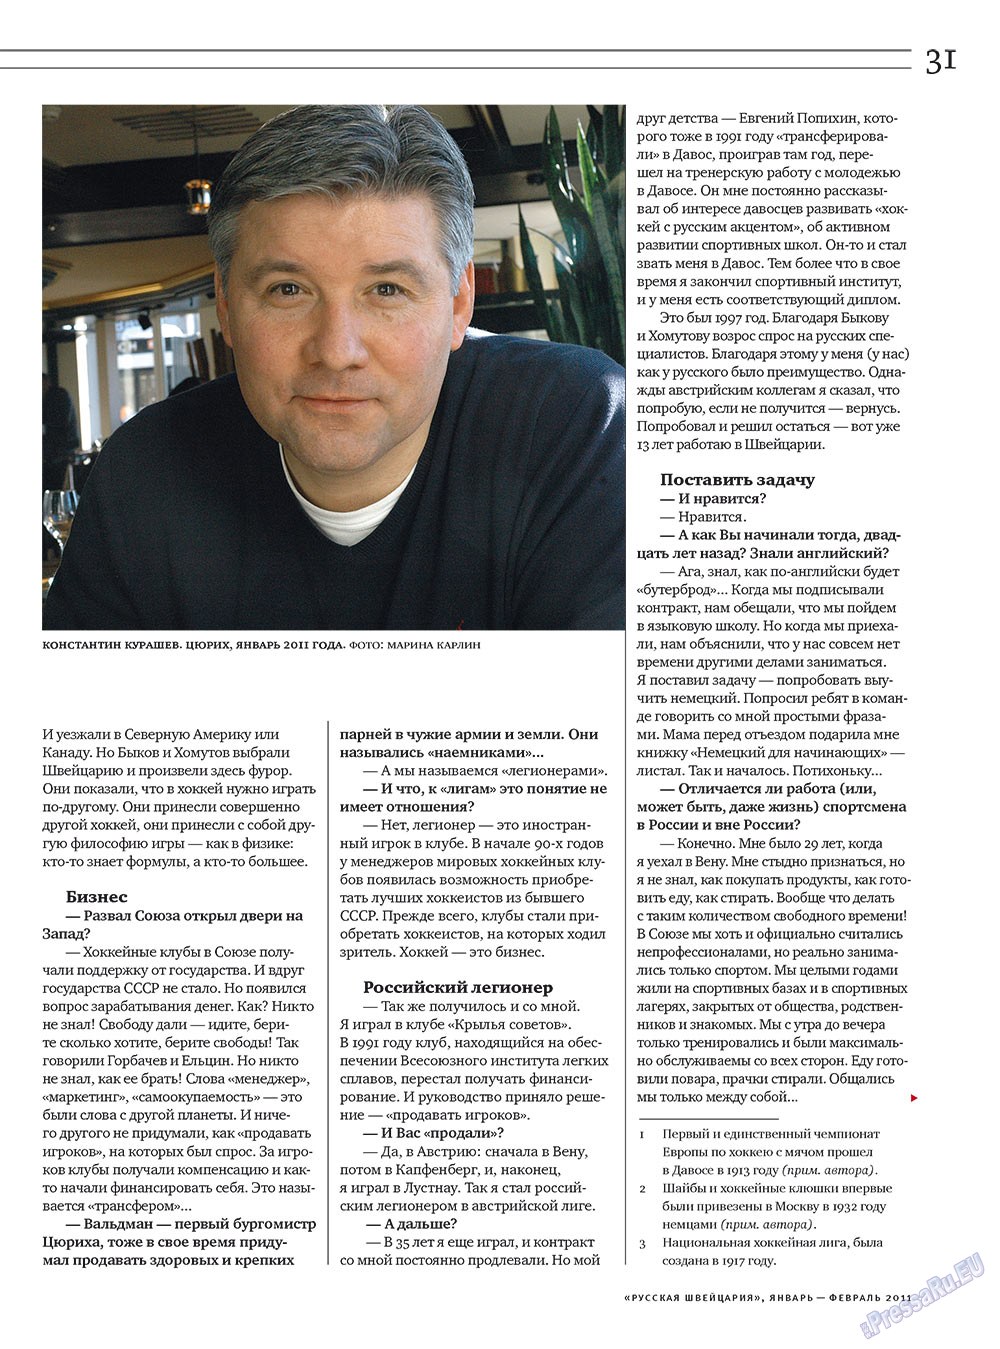 Русская Швейцария, журнал. 2011 №1 стр.31